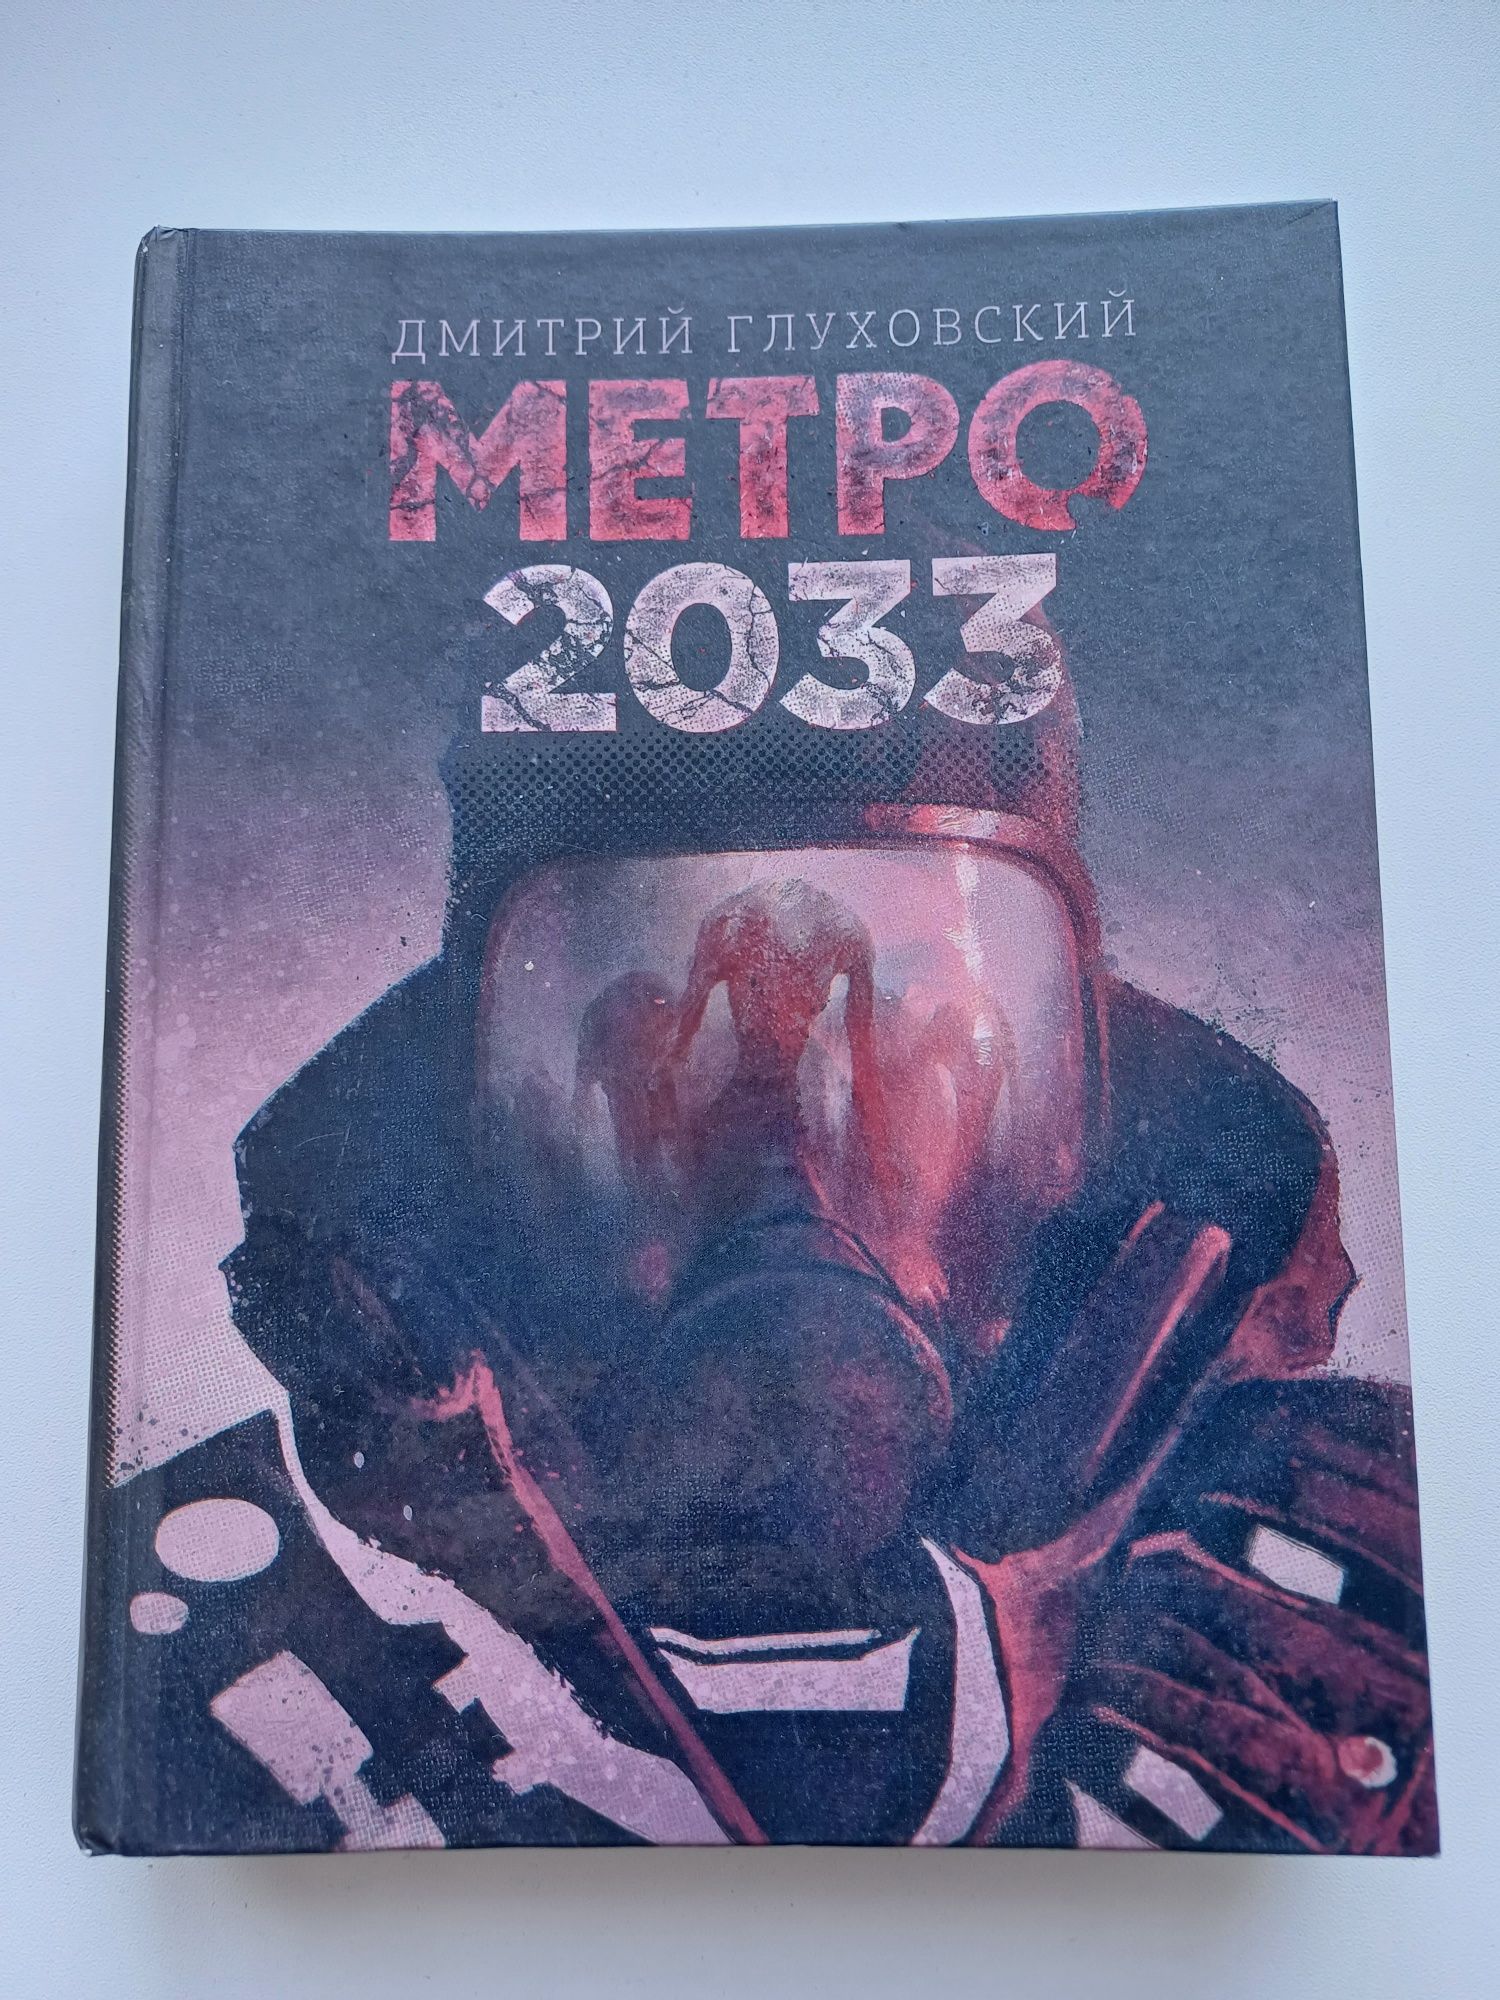 Продам книгу Метро 2033